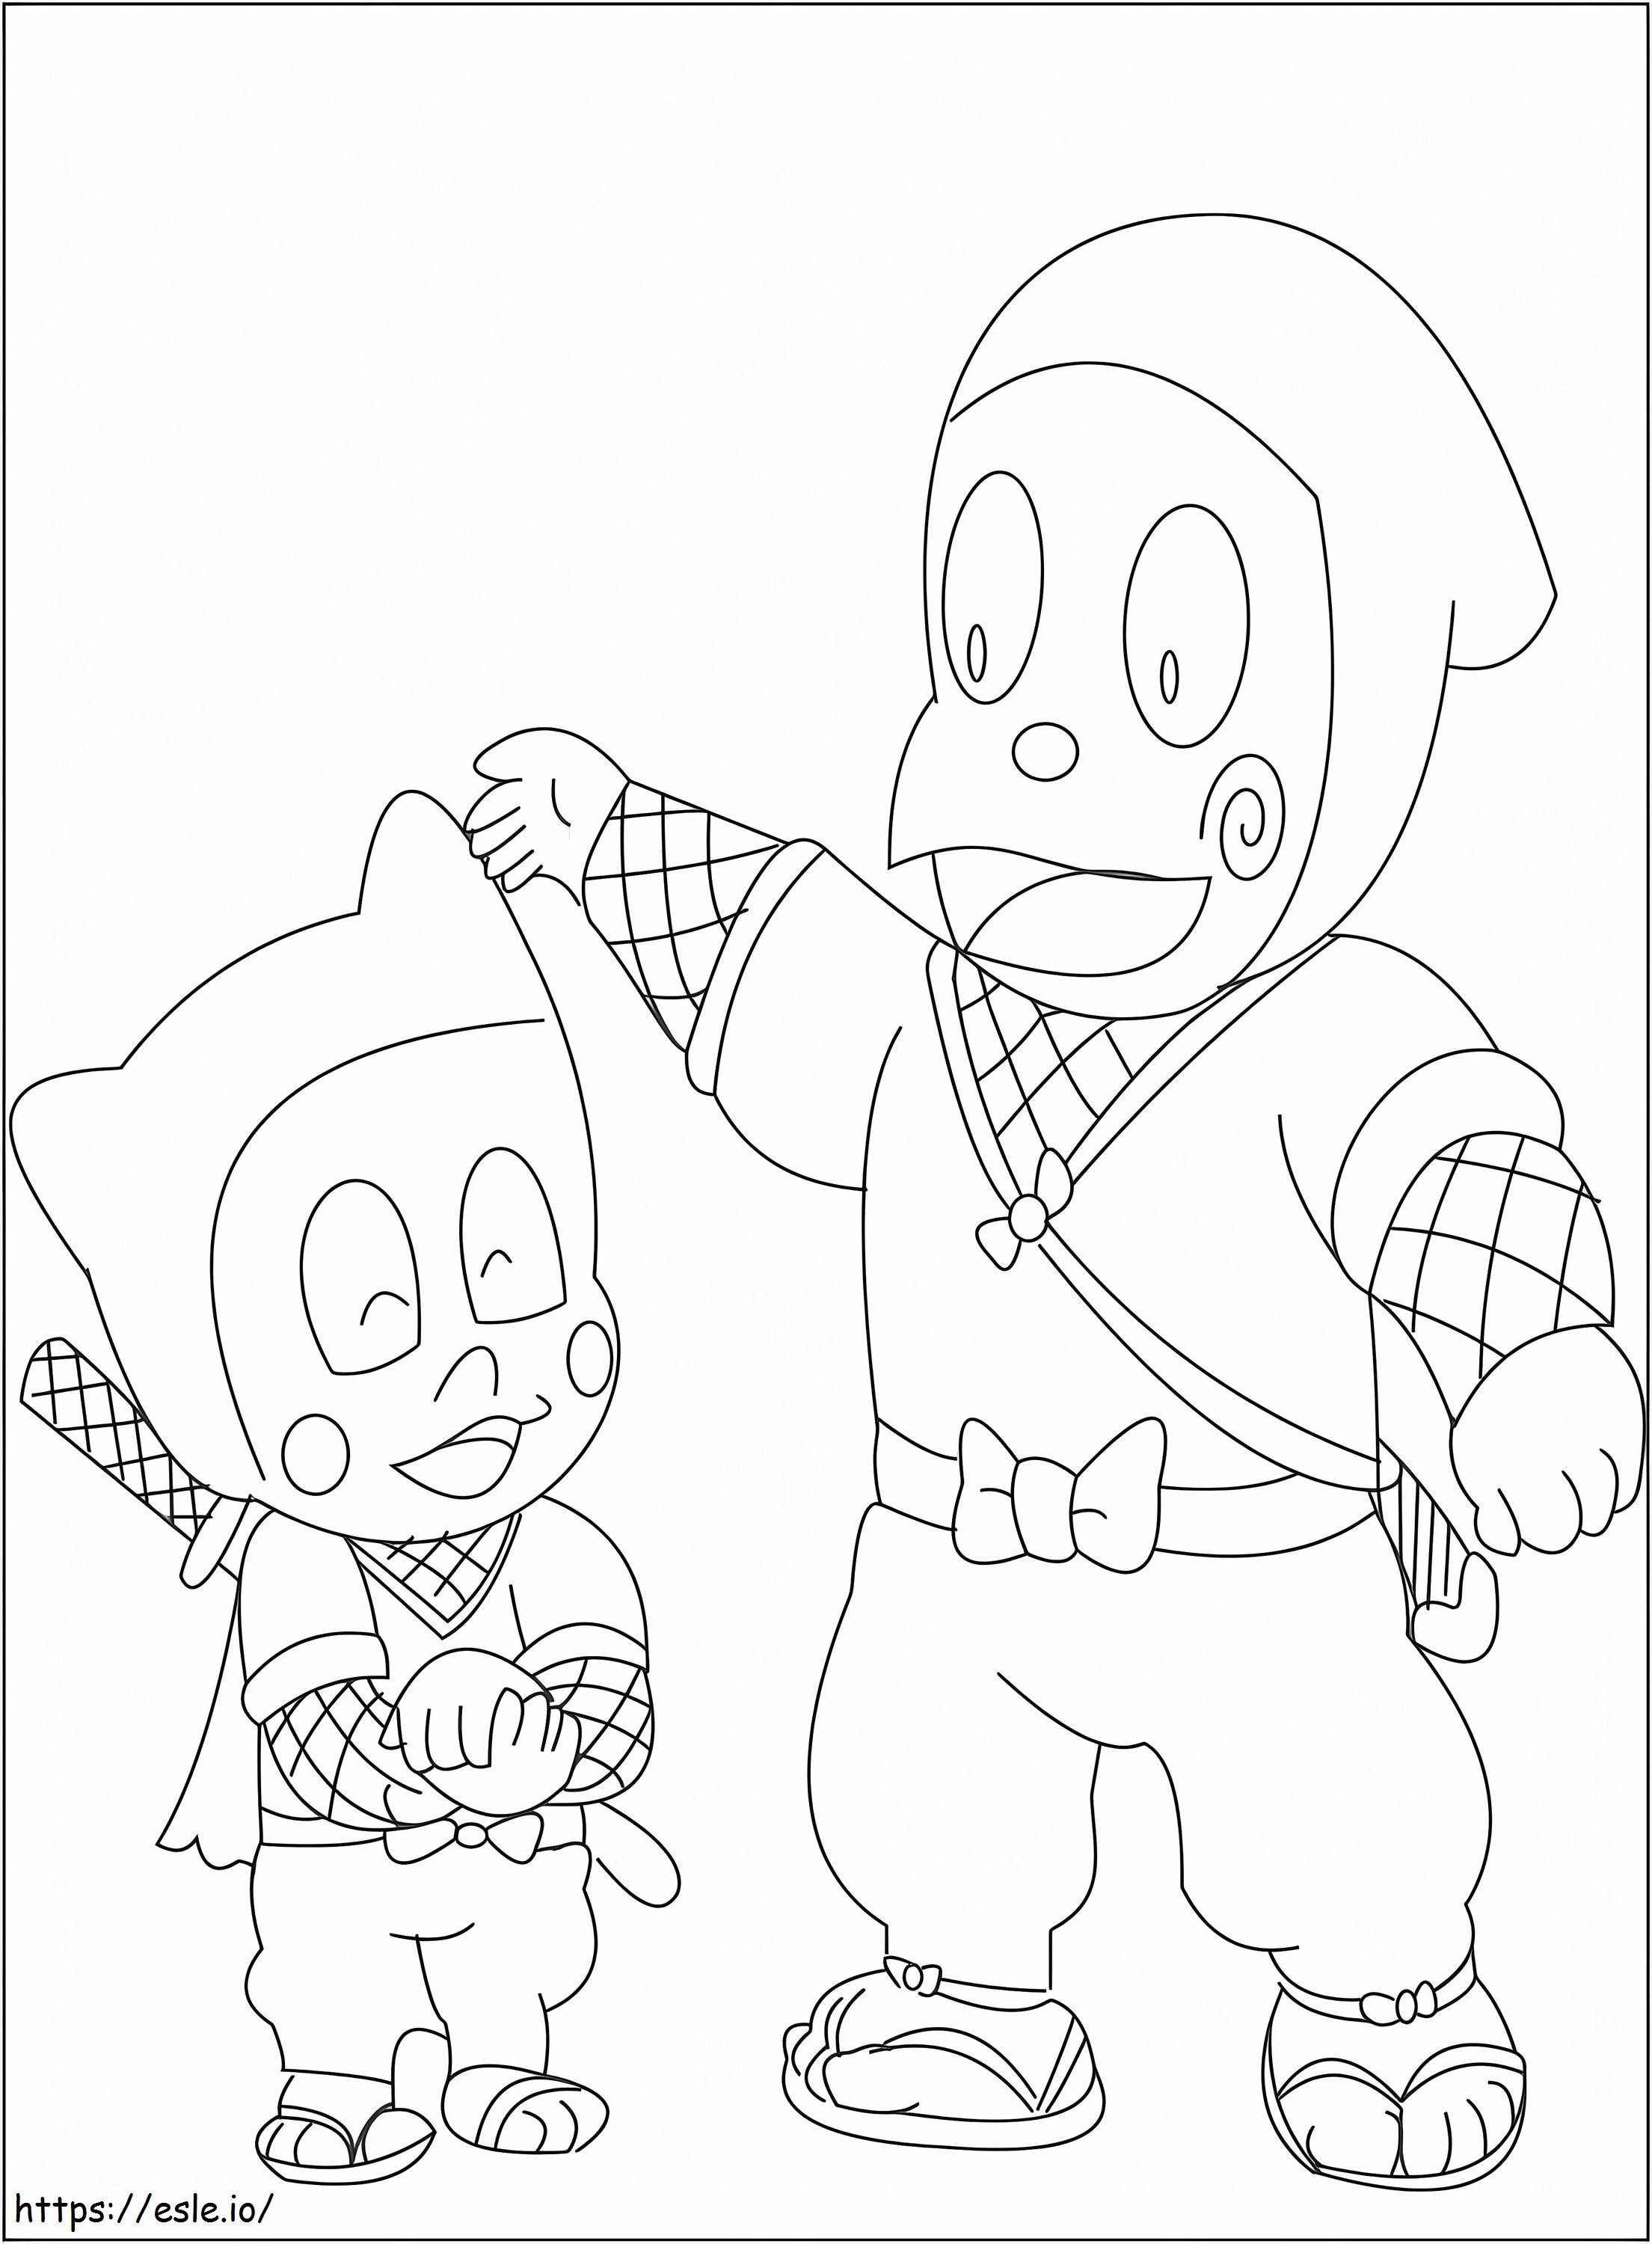 Shinzo And Kanzo Hattori coloring page